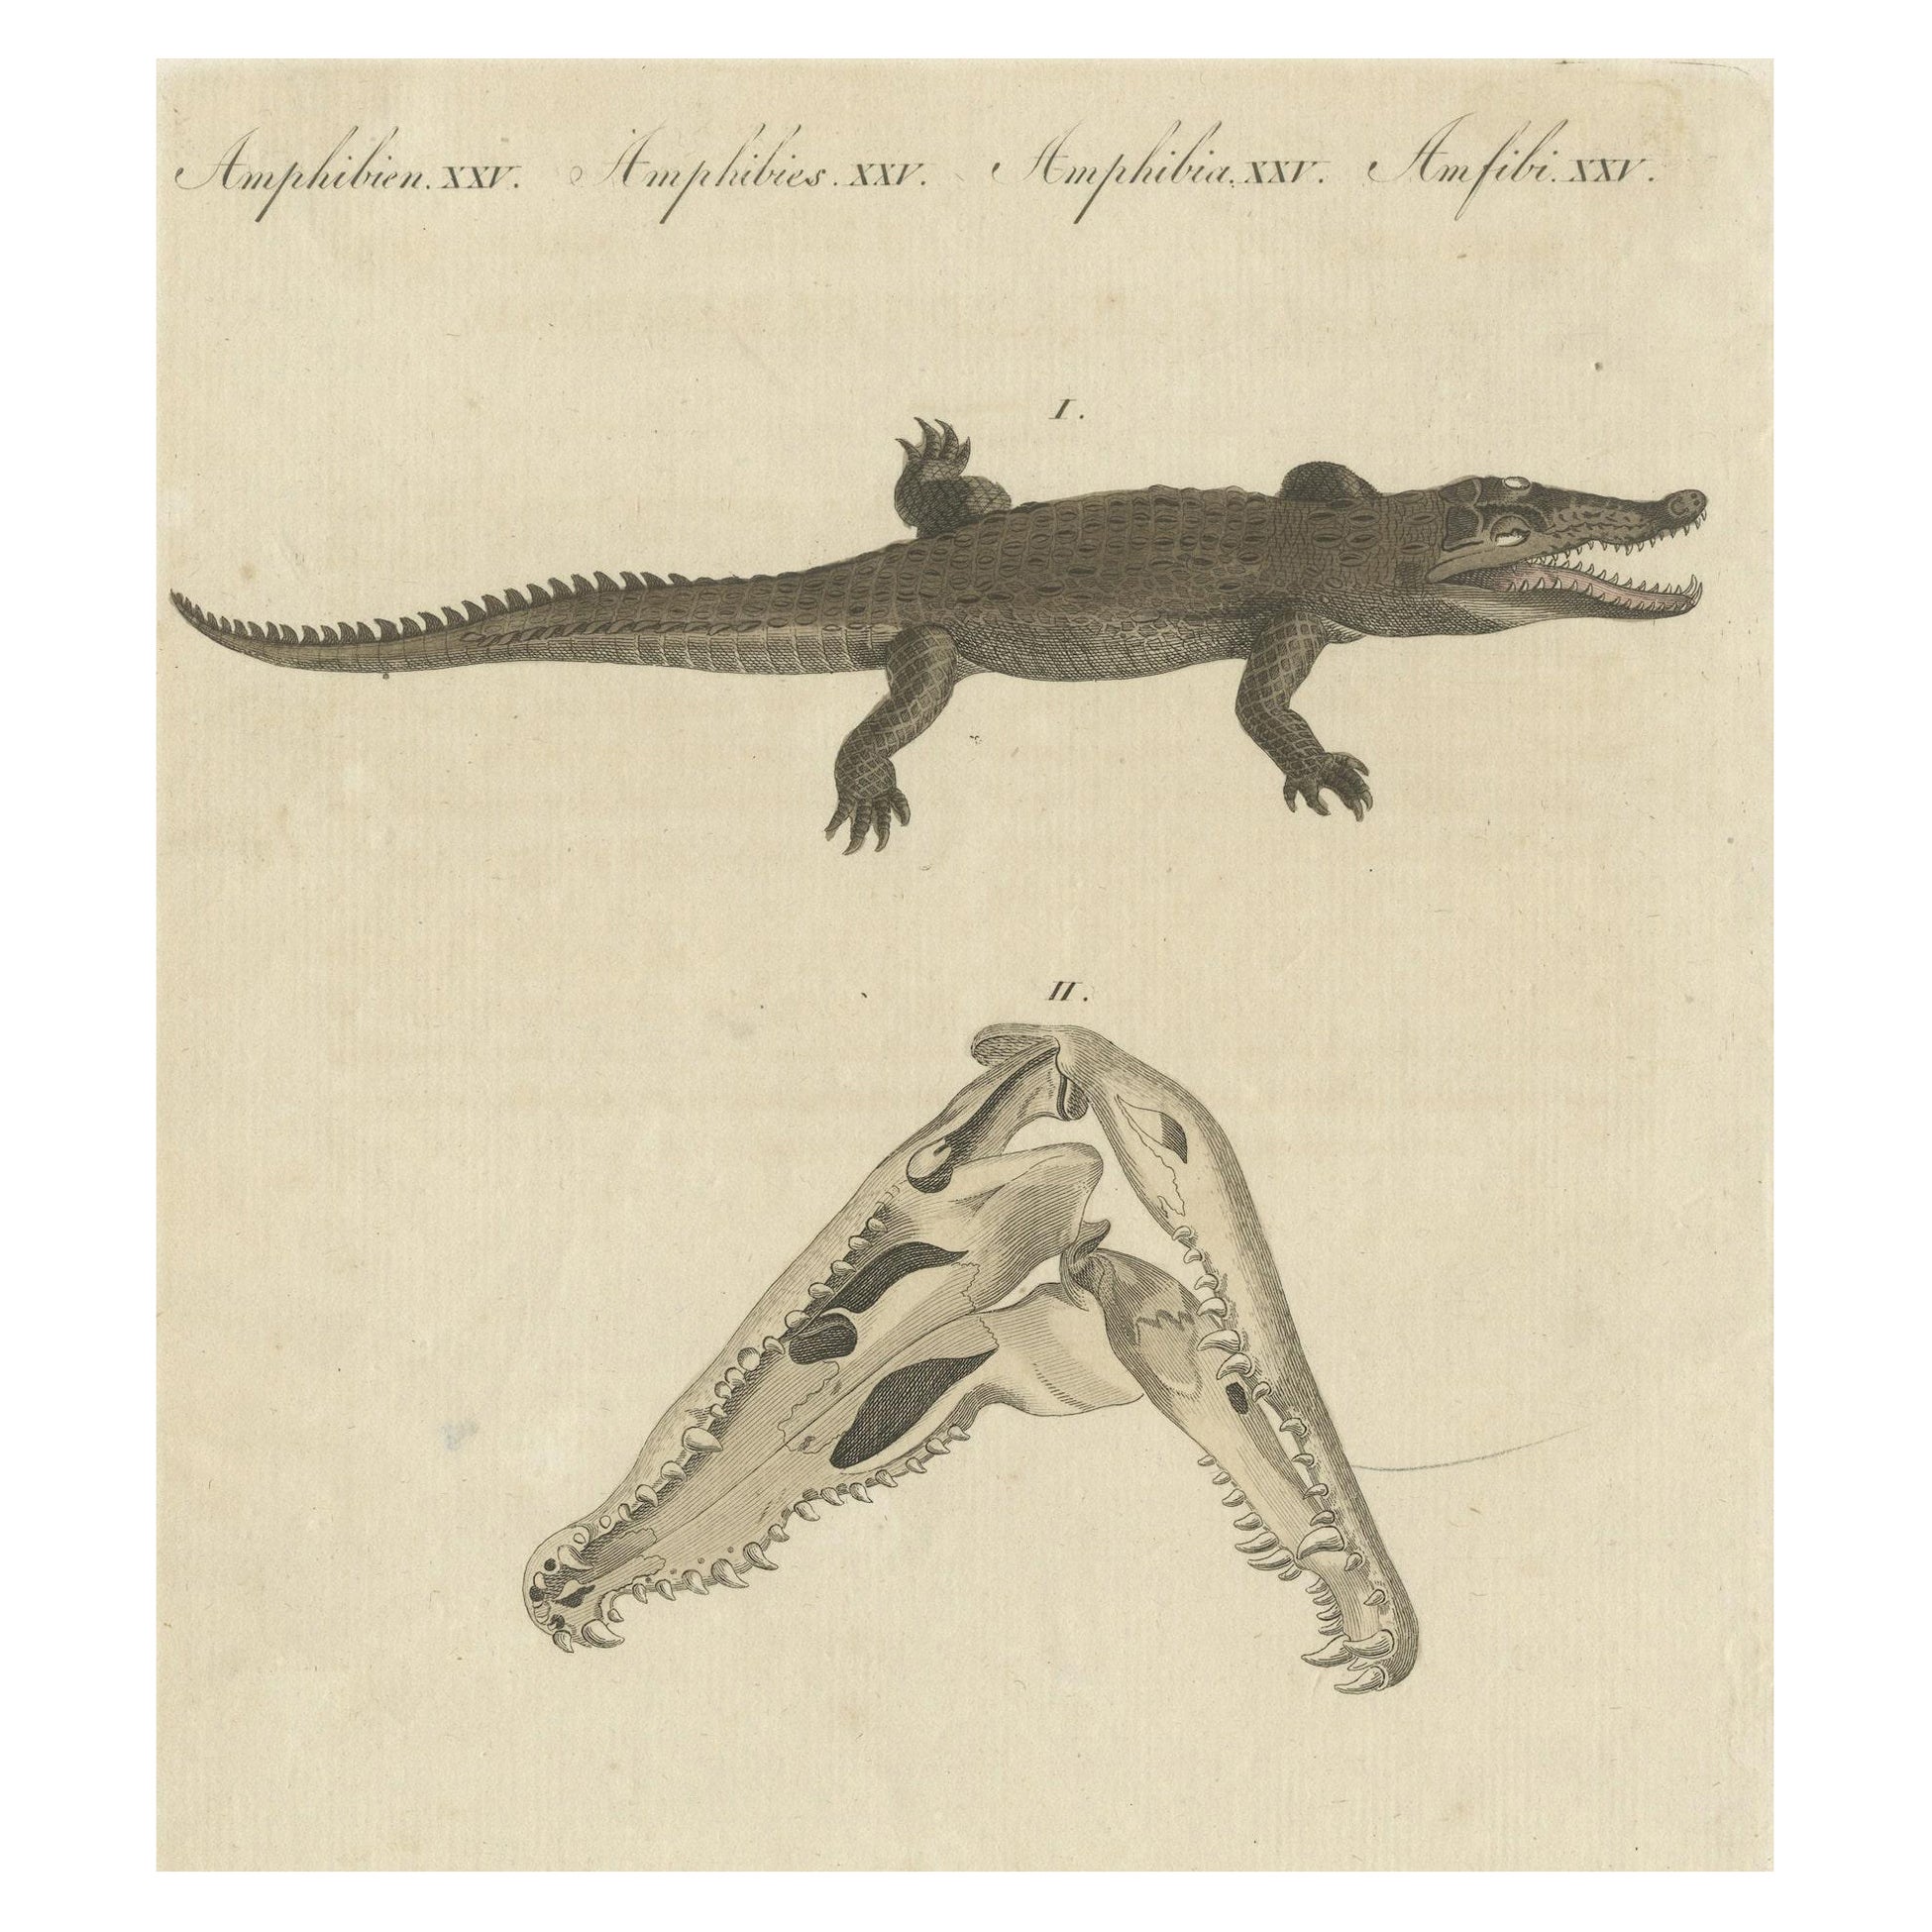 Antique Print of the Santo Domingo Crocodile and a Crocodile Skull